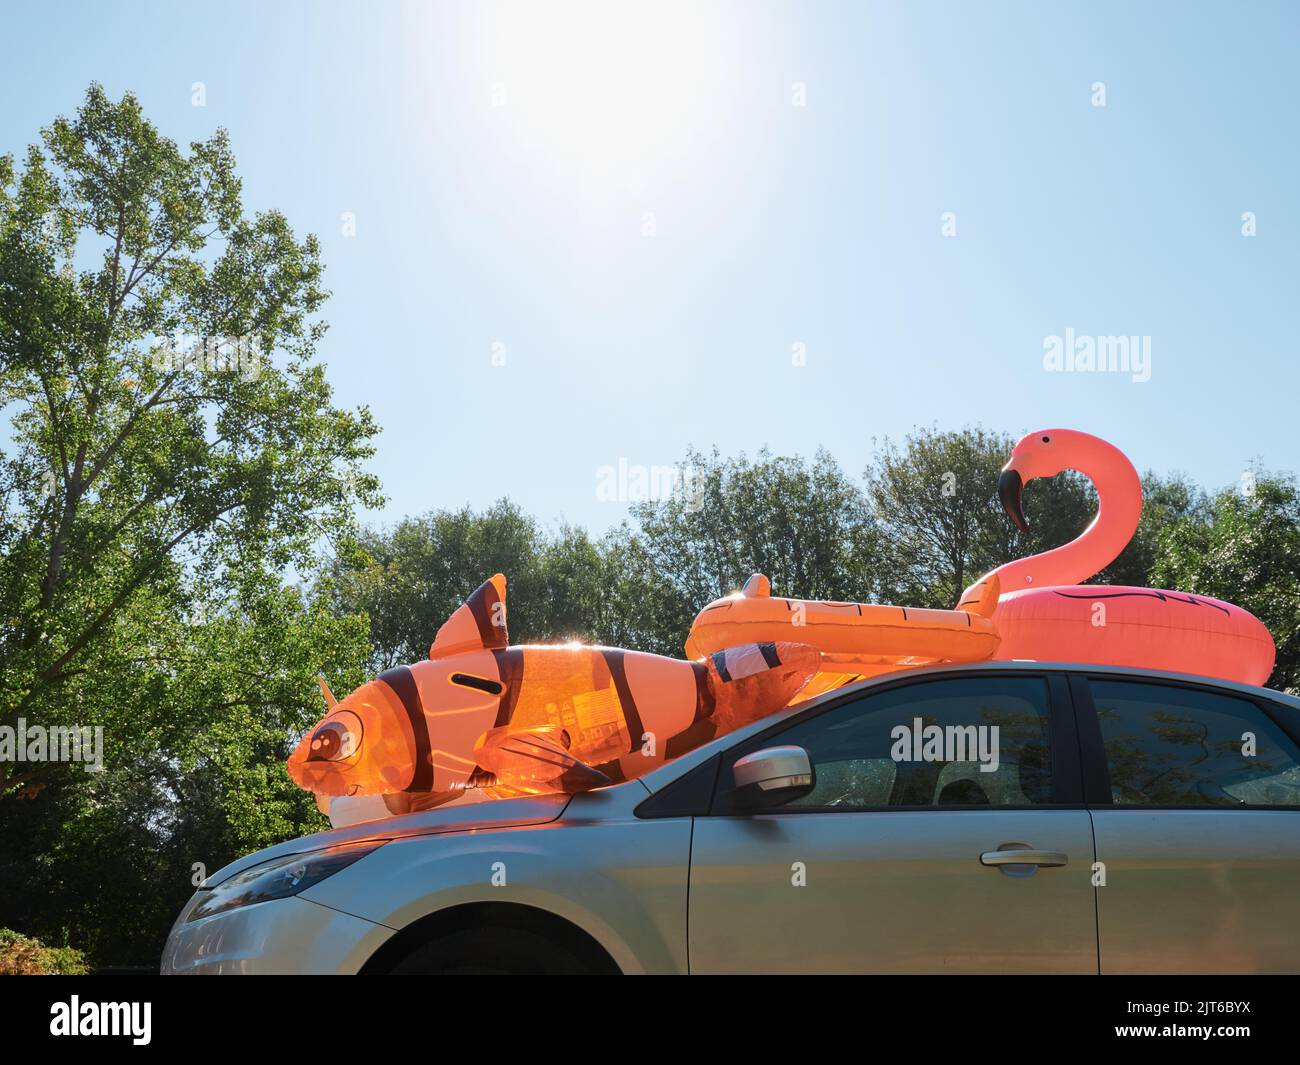 Ein Familienauto mit aufblasbarem Spielzeug für Kinder auf dem Dach in einem Sommergarkplatz - Sommer-Familienurlaubsauto packen - Sommer-Tagesauszeit - seltsam skurril Stockfoto